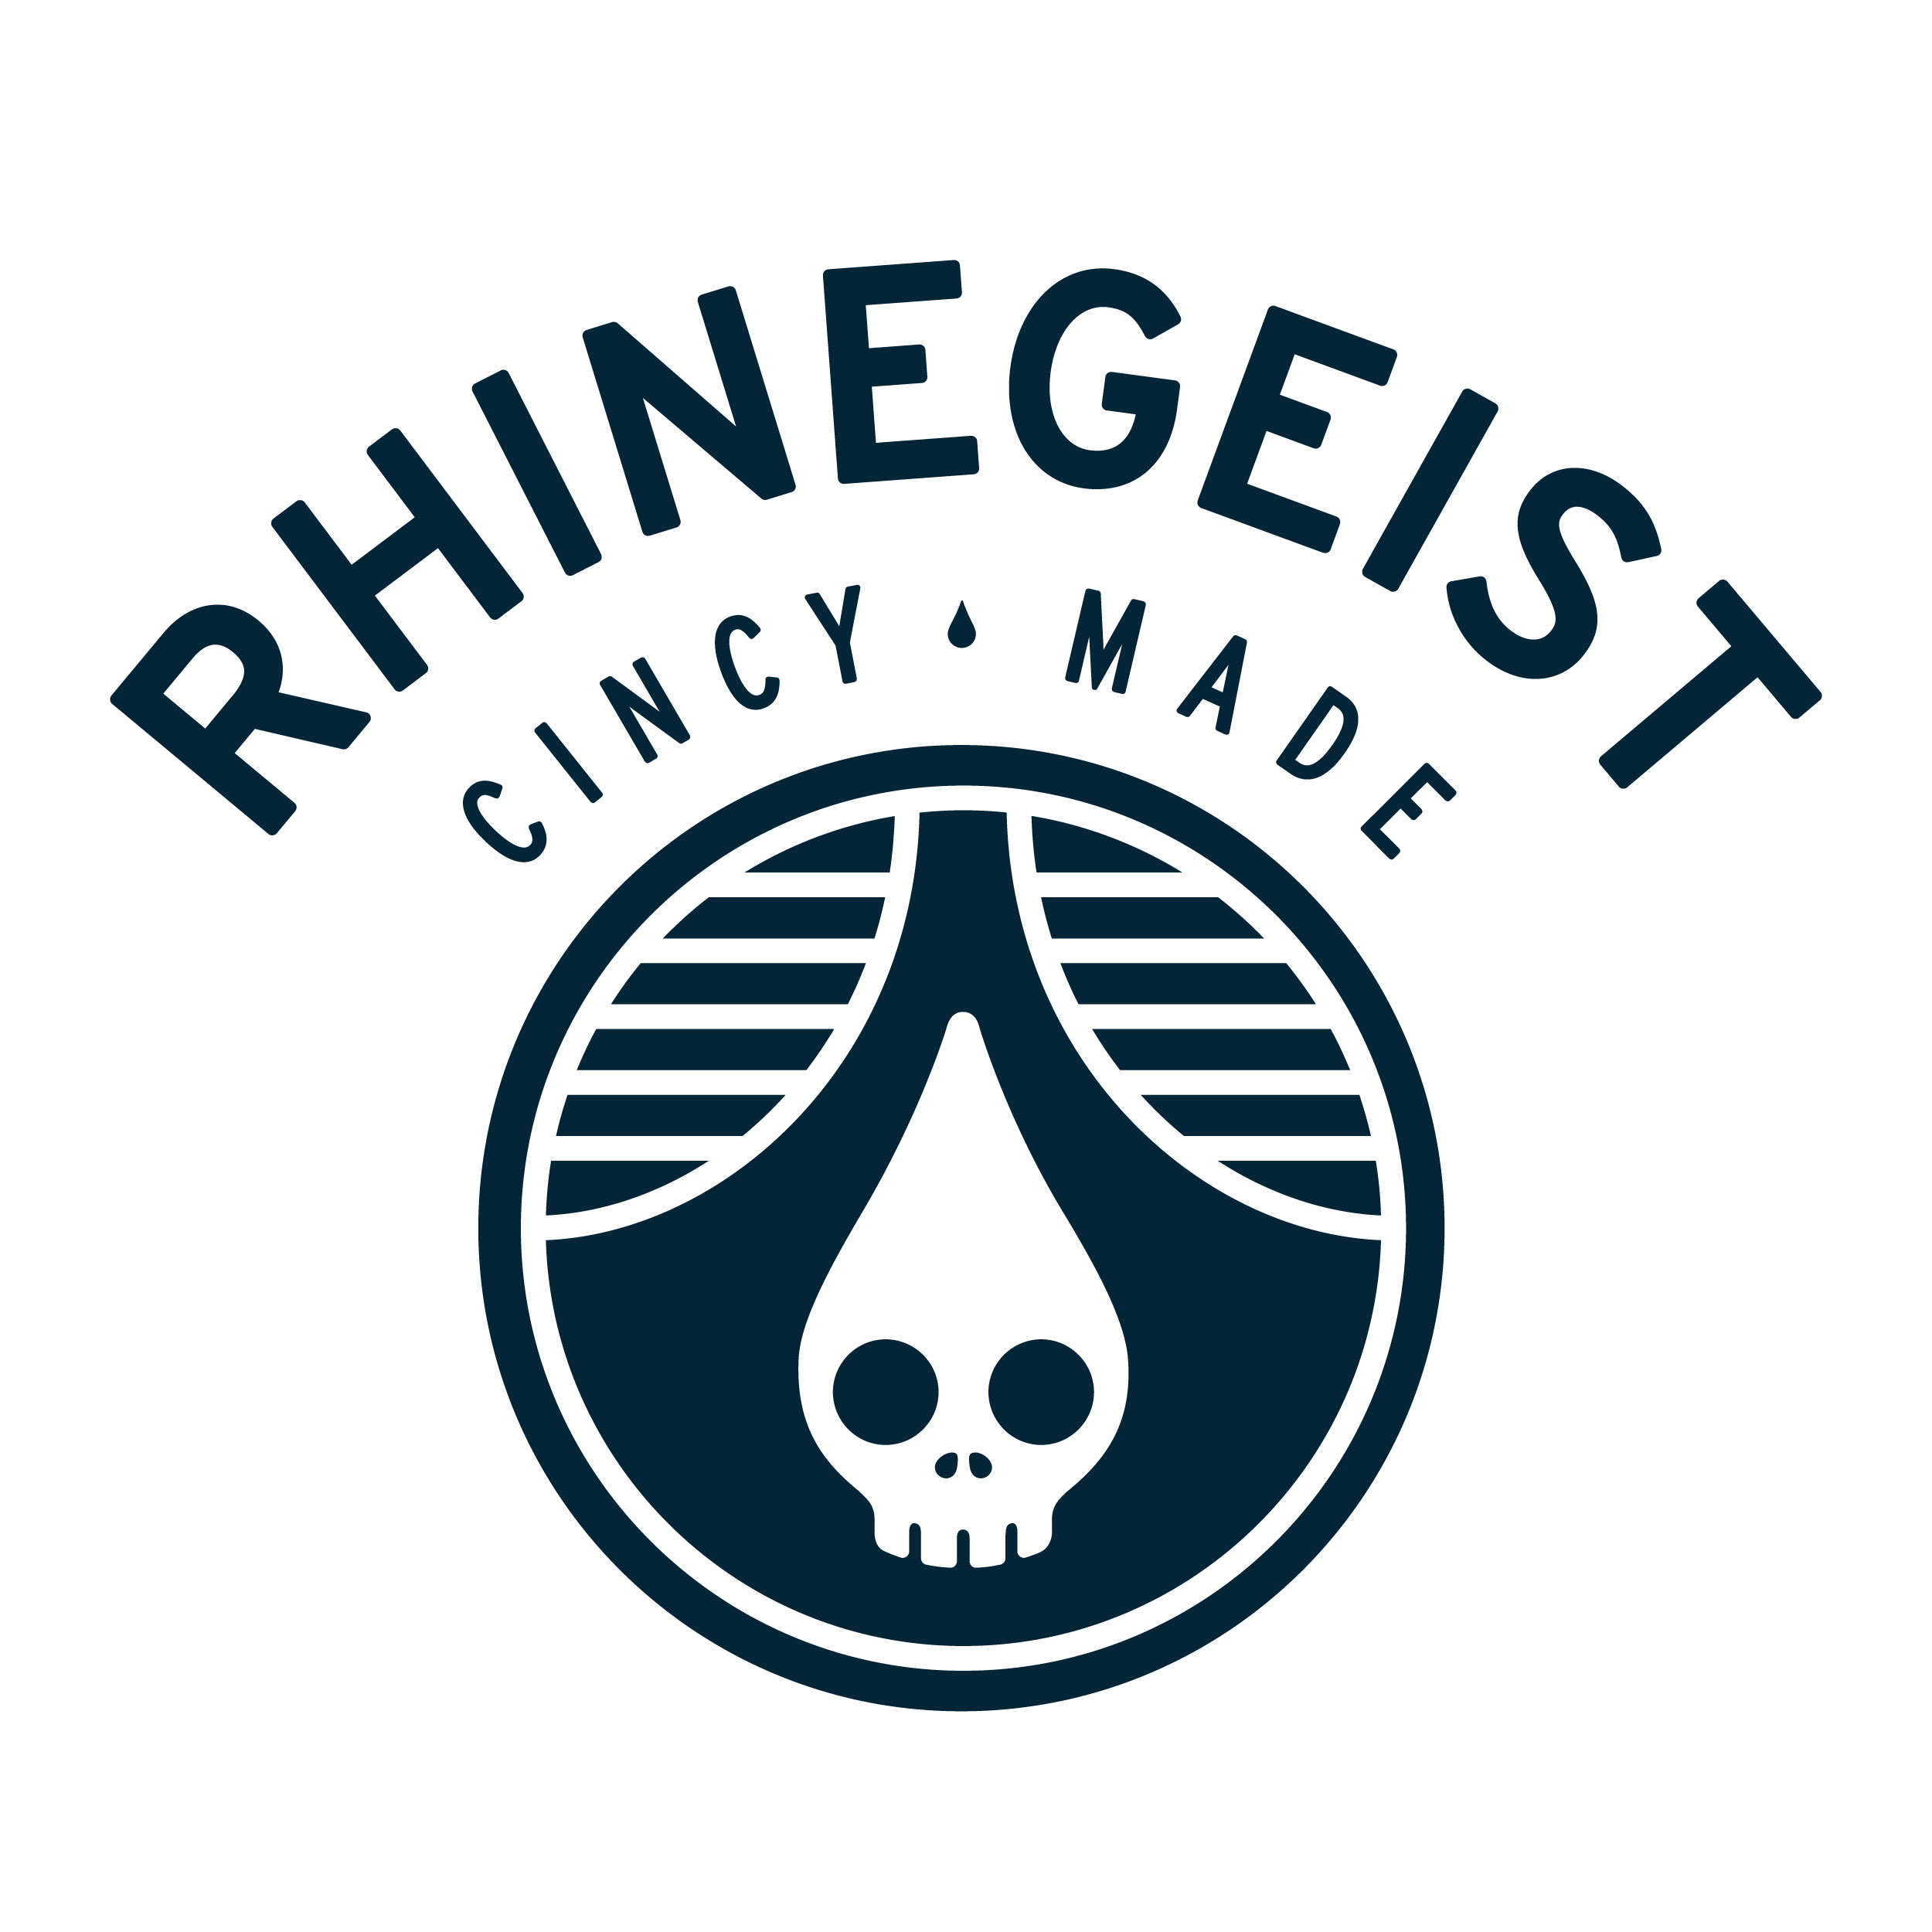 Rhinegeist